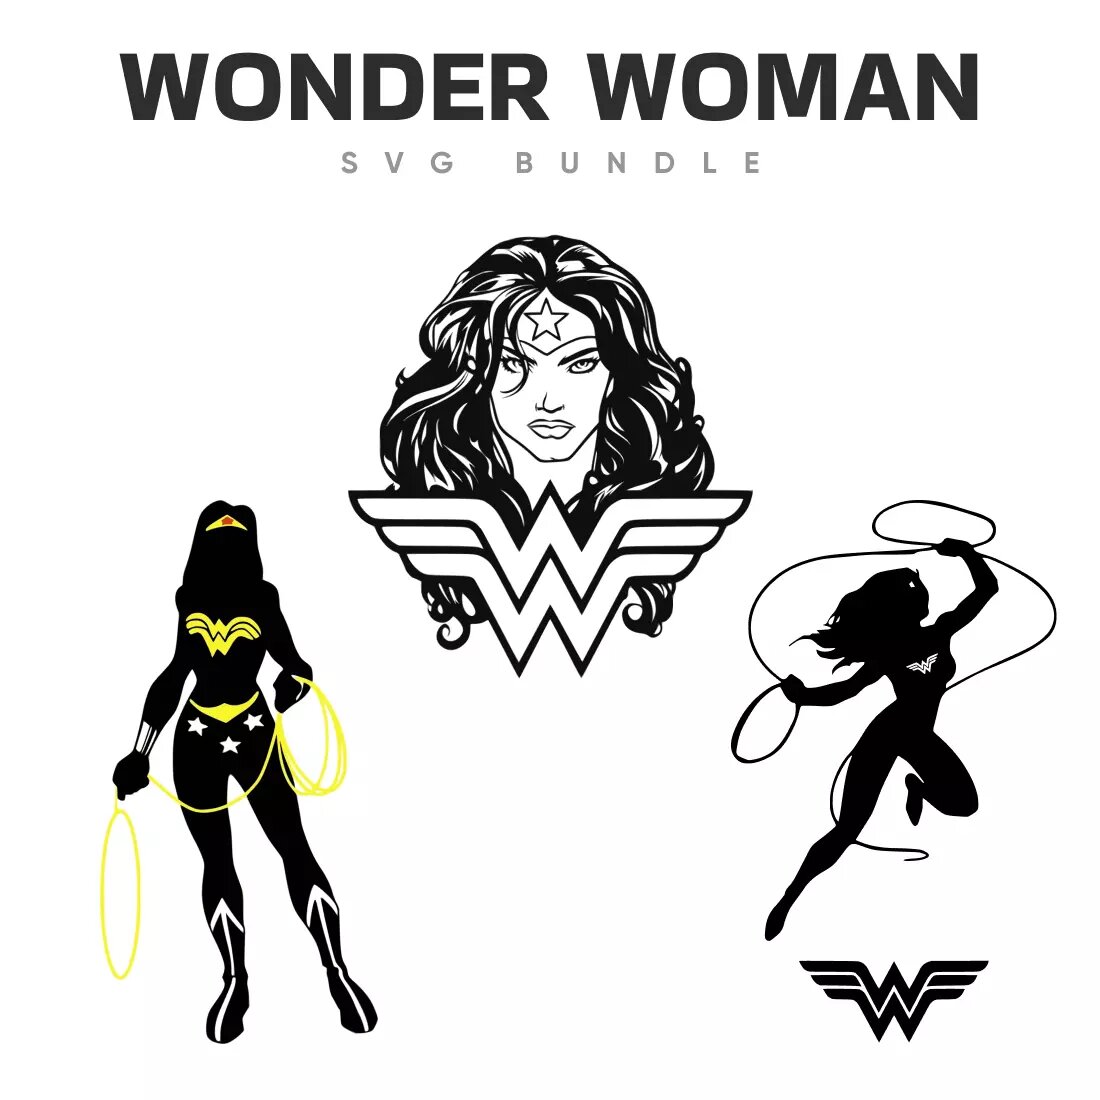 Wonder Woman SVG Bundle Preview 2.